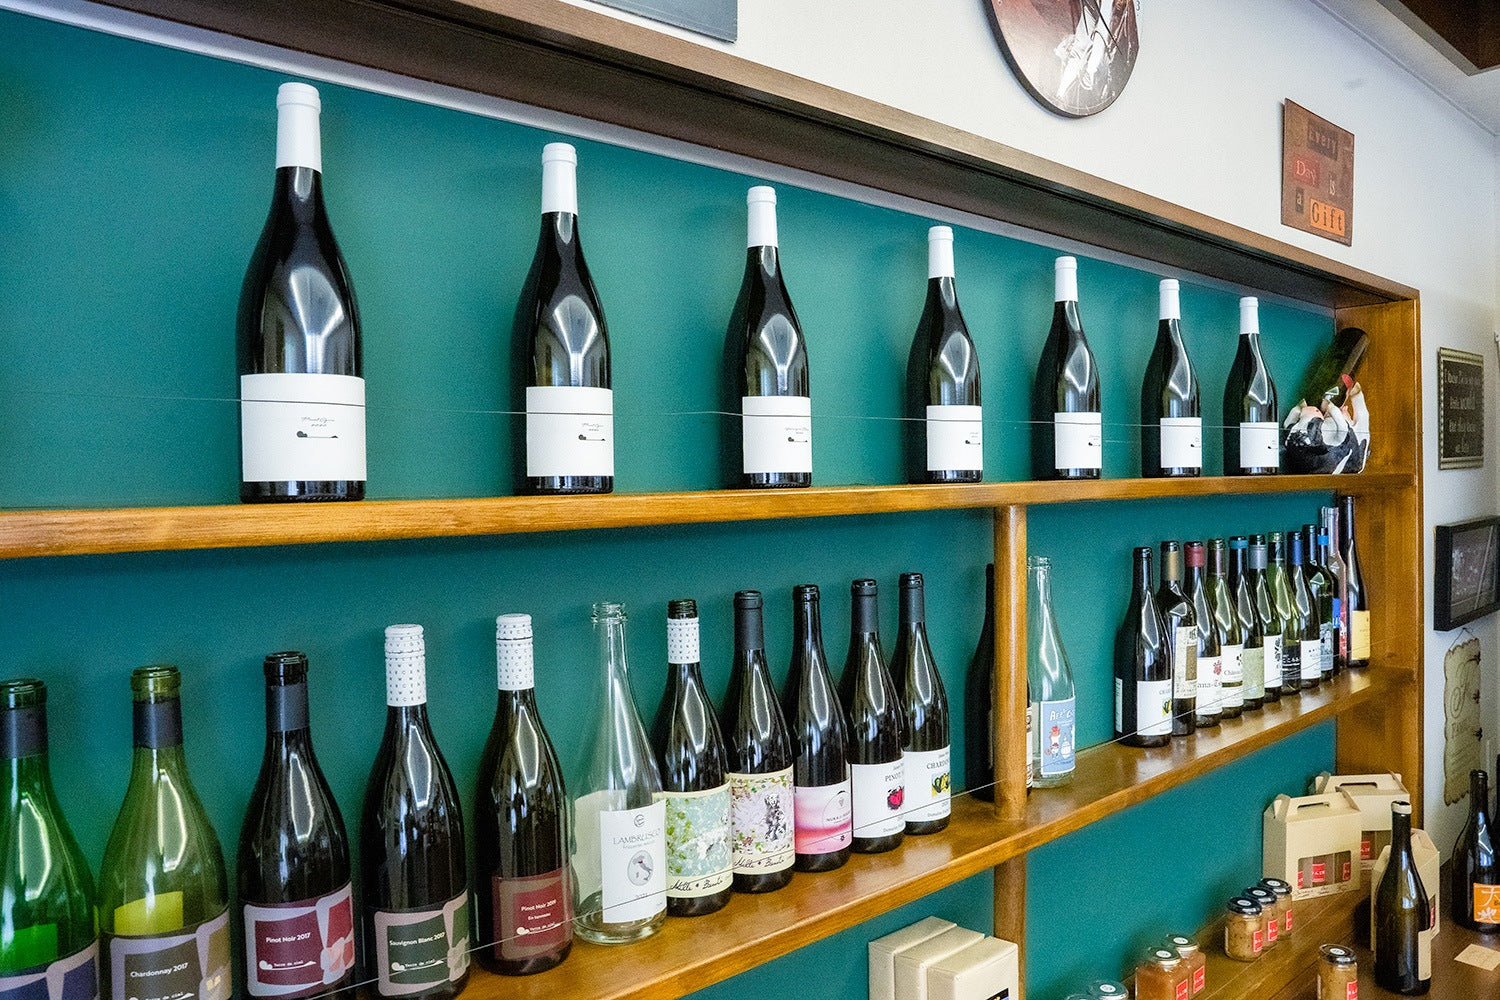 施設の中にワインショップが併設されており、テール・ド・シエルのもののみならず、委託醸造を受けている先のワインも購入することができる。